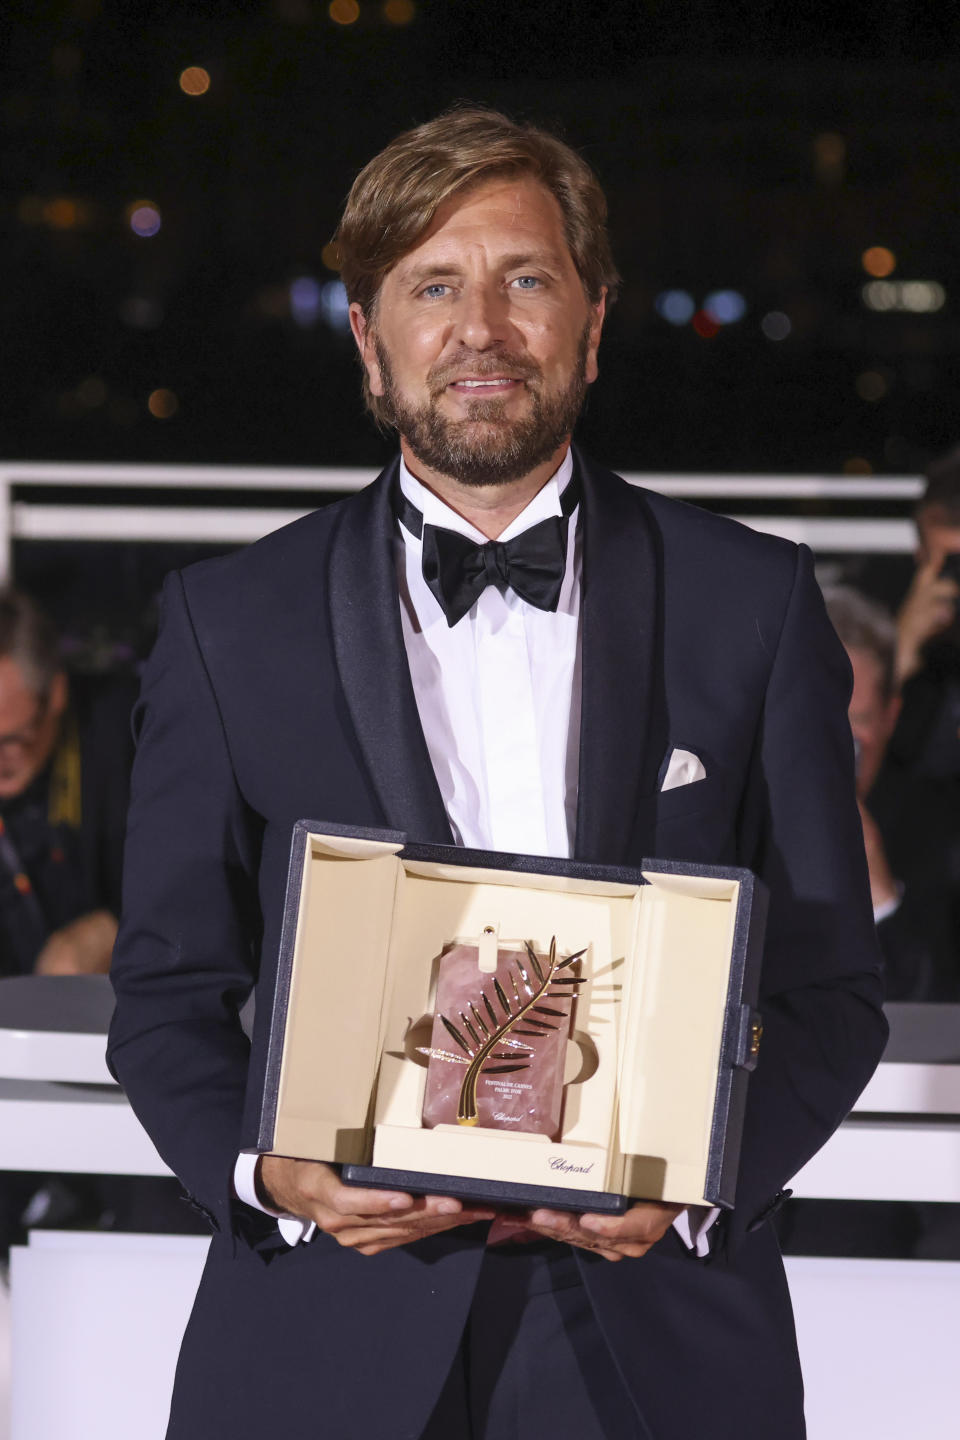 El guionista y director Ruben Ostlund posa tras ganar la Palma de Oro por “Triangle of Sadness” (“Triángulo de la tristeza”) en la 75ª edición del Festival de cine de Cannes en Francia el sábado 28 de mayo de 2022. (Foto Vianney Le Caer/Invision/AP)